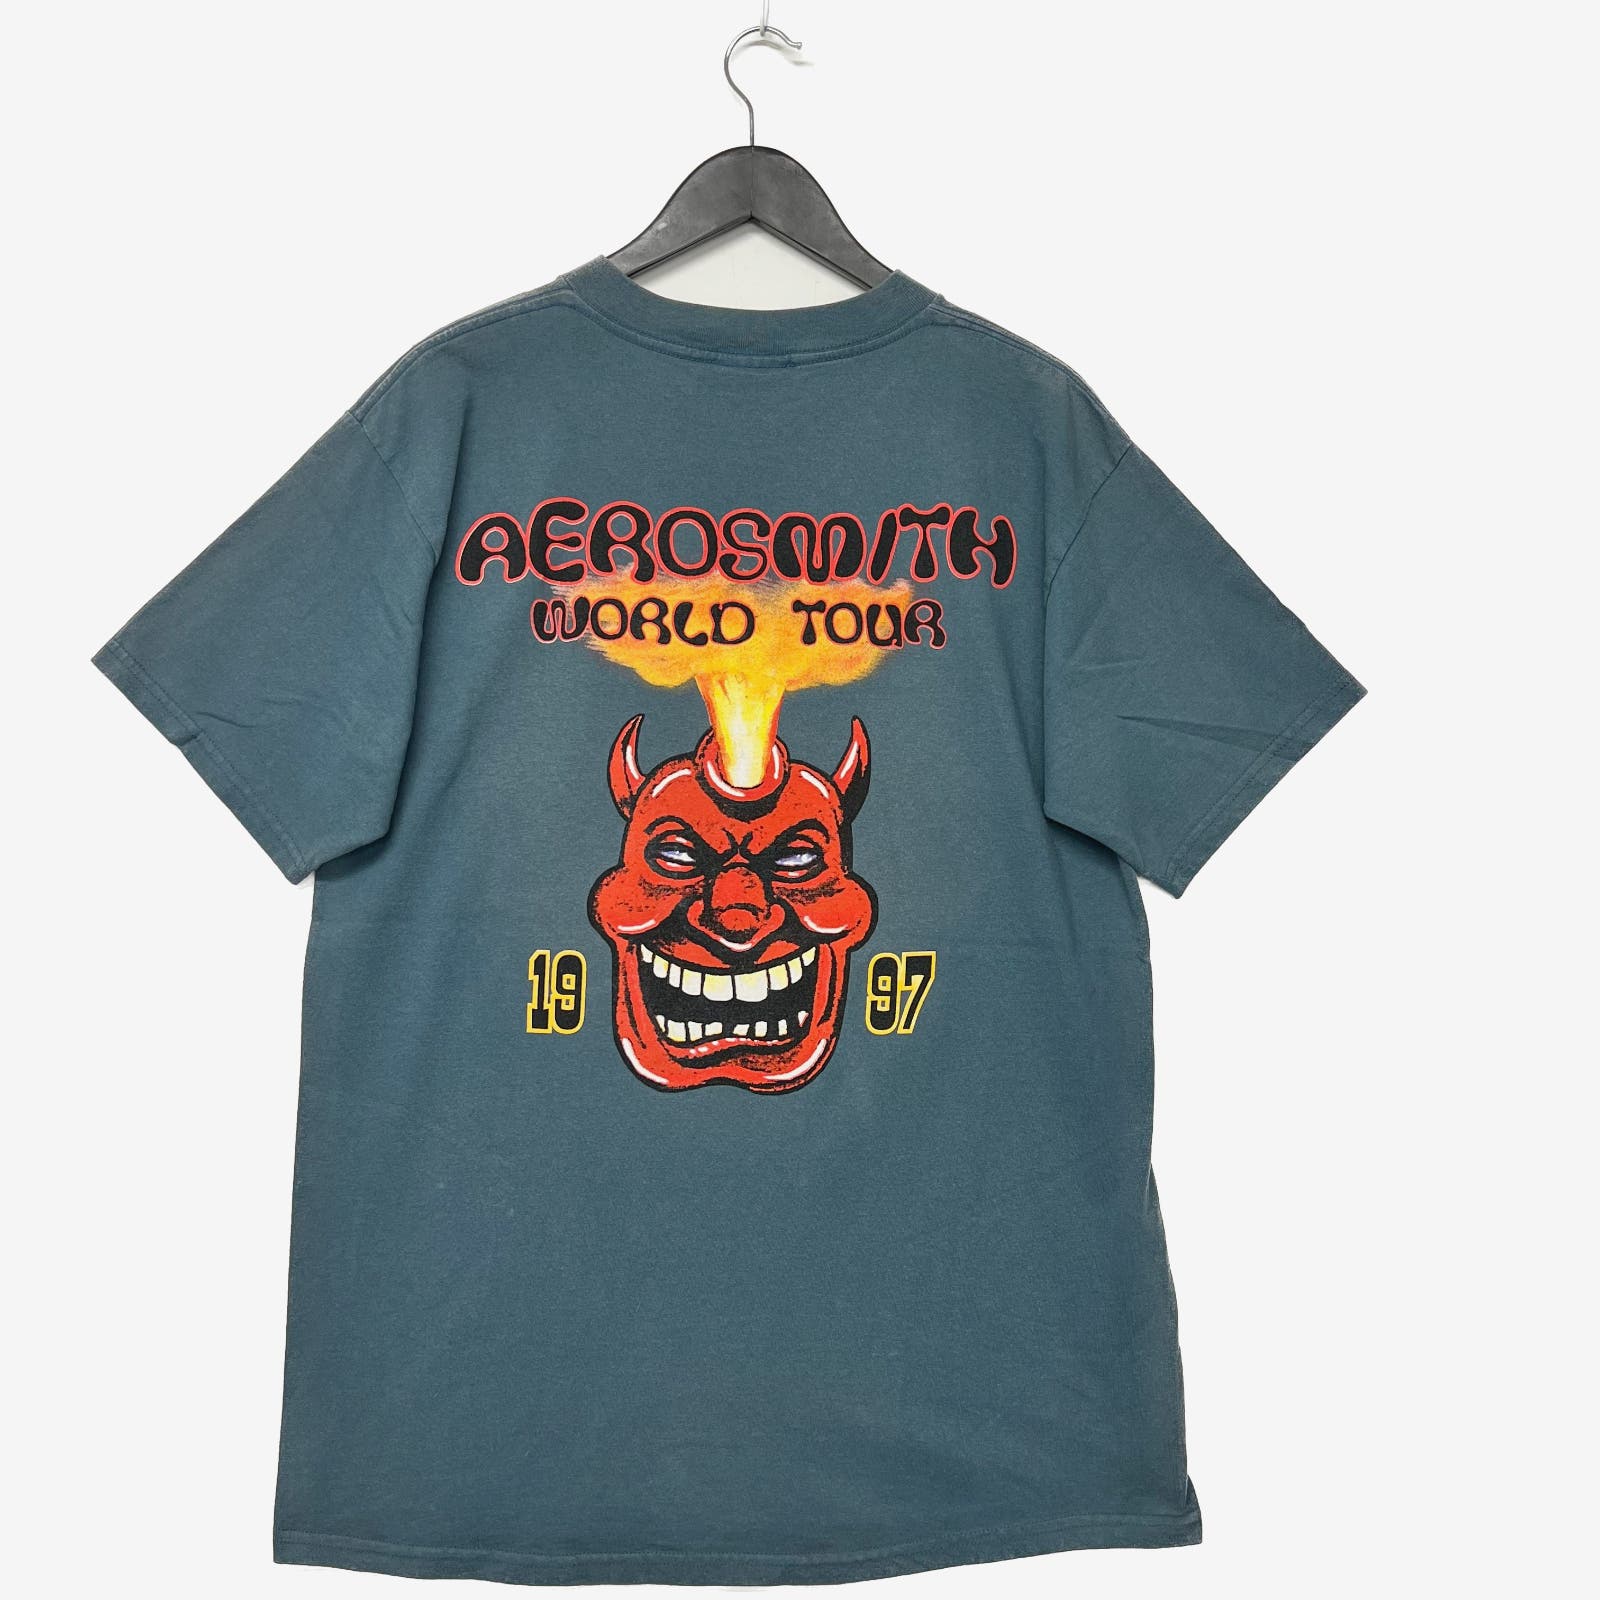 1997 Aerosmith T-shirt Size XL